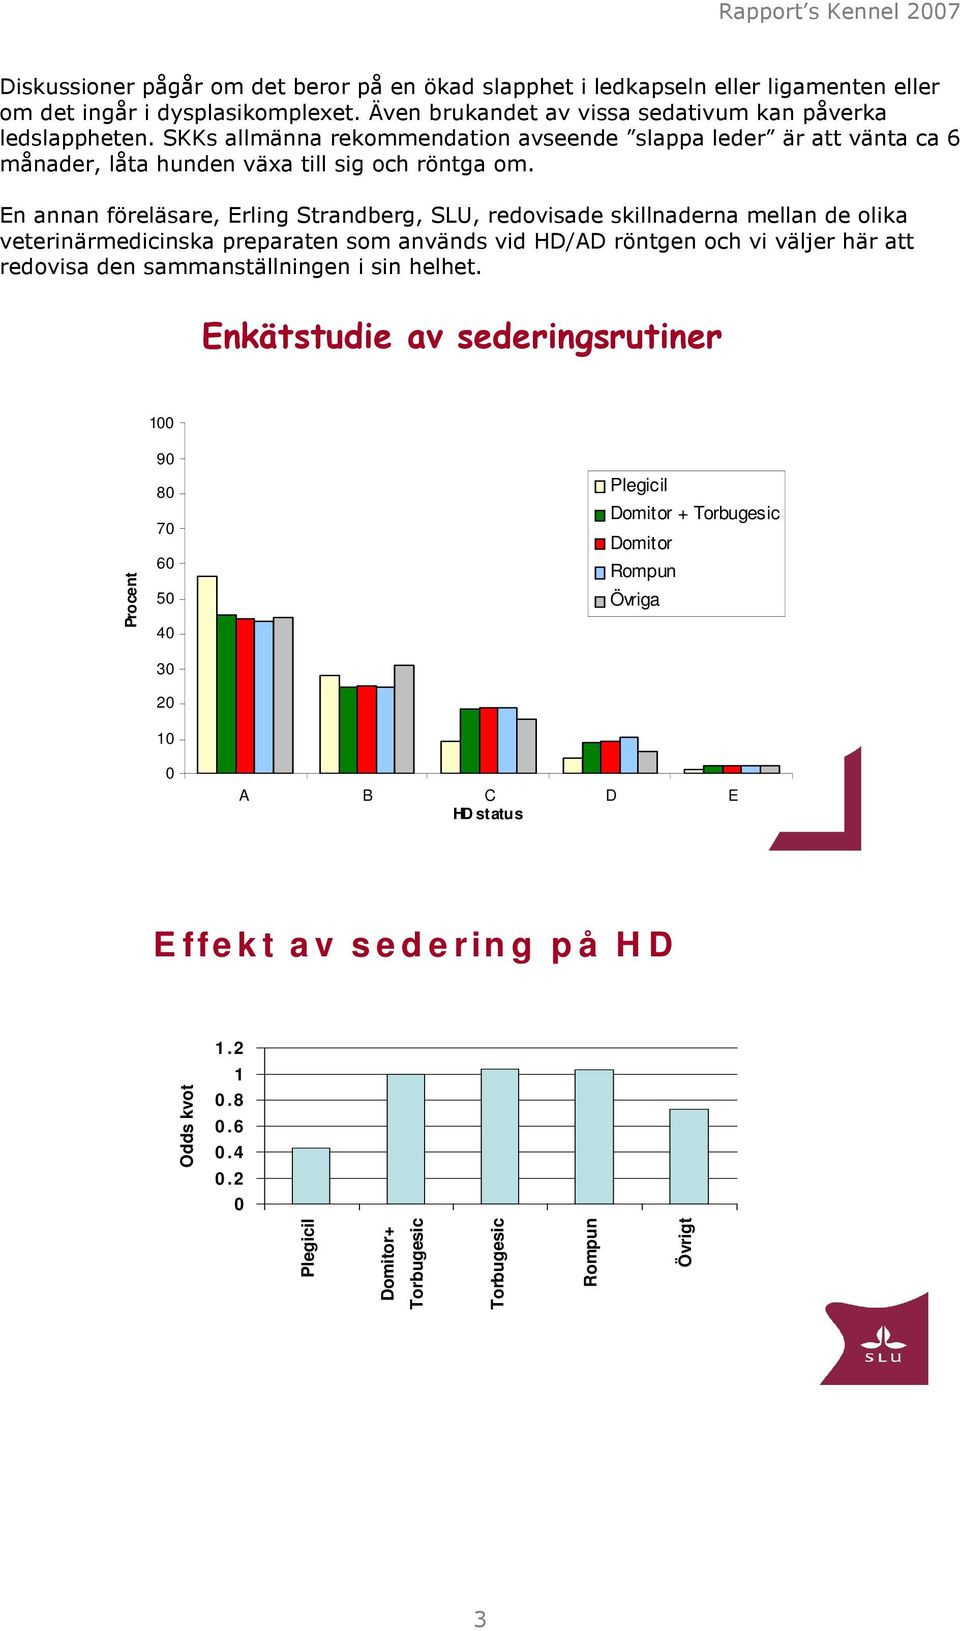 En annan föreläsare, Erling Strandberg, SLU, redovisade skillnaderna mellan de olika veterinärmedicinska preparaten som används vid HD/AD röntgen och vi väljer här att redovisa den